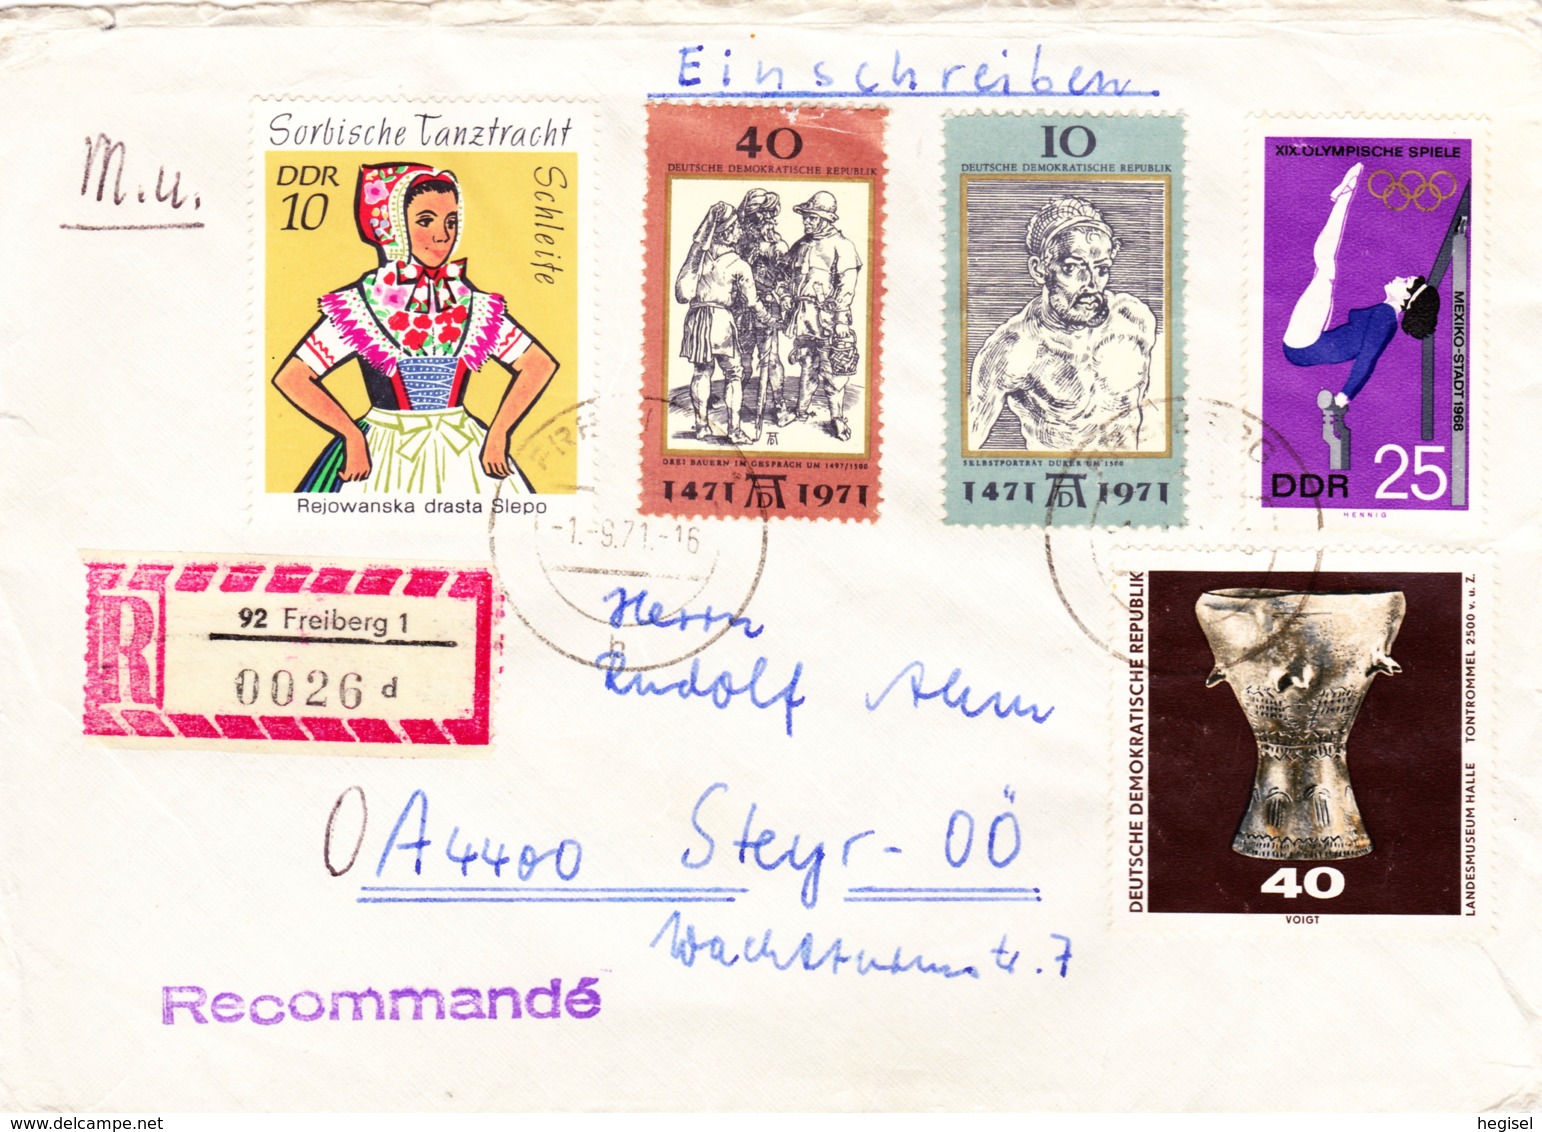 1971, DDR, Verschiedene Briefmarken, REC, Echt Gelaufen, Stempel "Tauschkontrolle 14 D" - Enveloppes Privées - Oblitérées